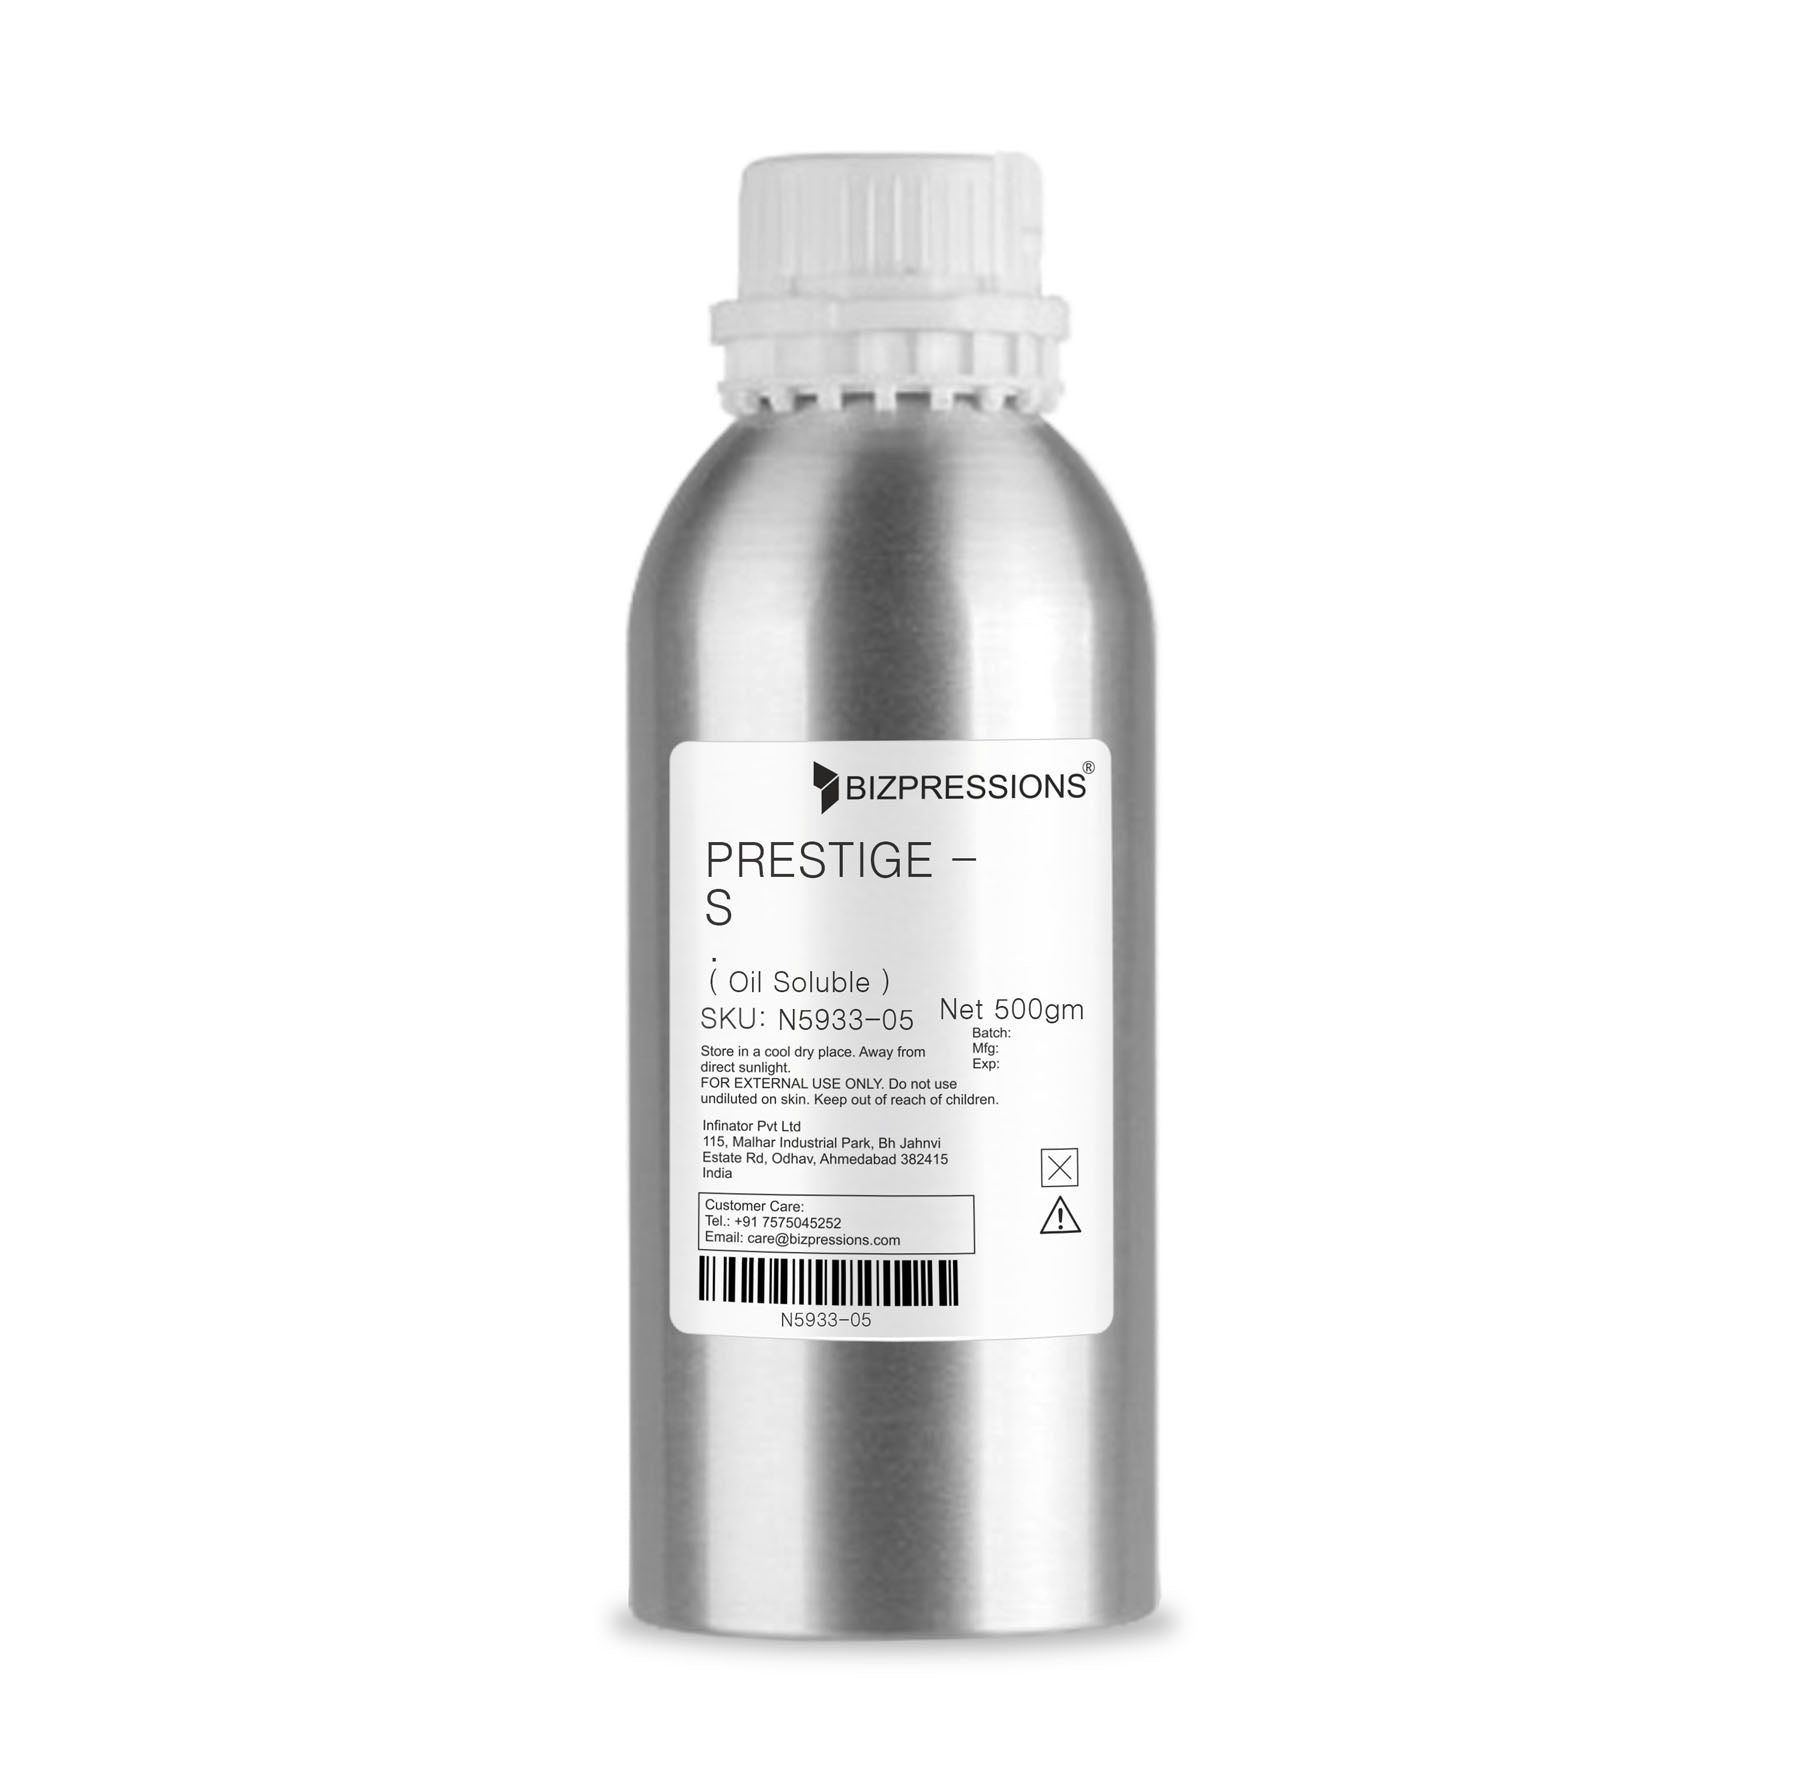 PRESTIGE - S - Fragrance ( Oil Soluble ) - 500 gm